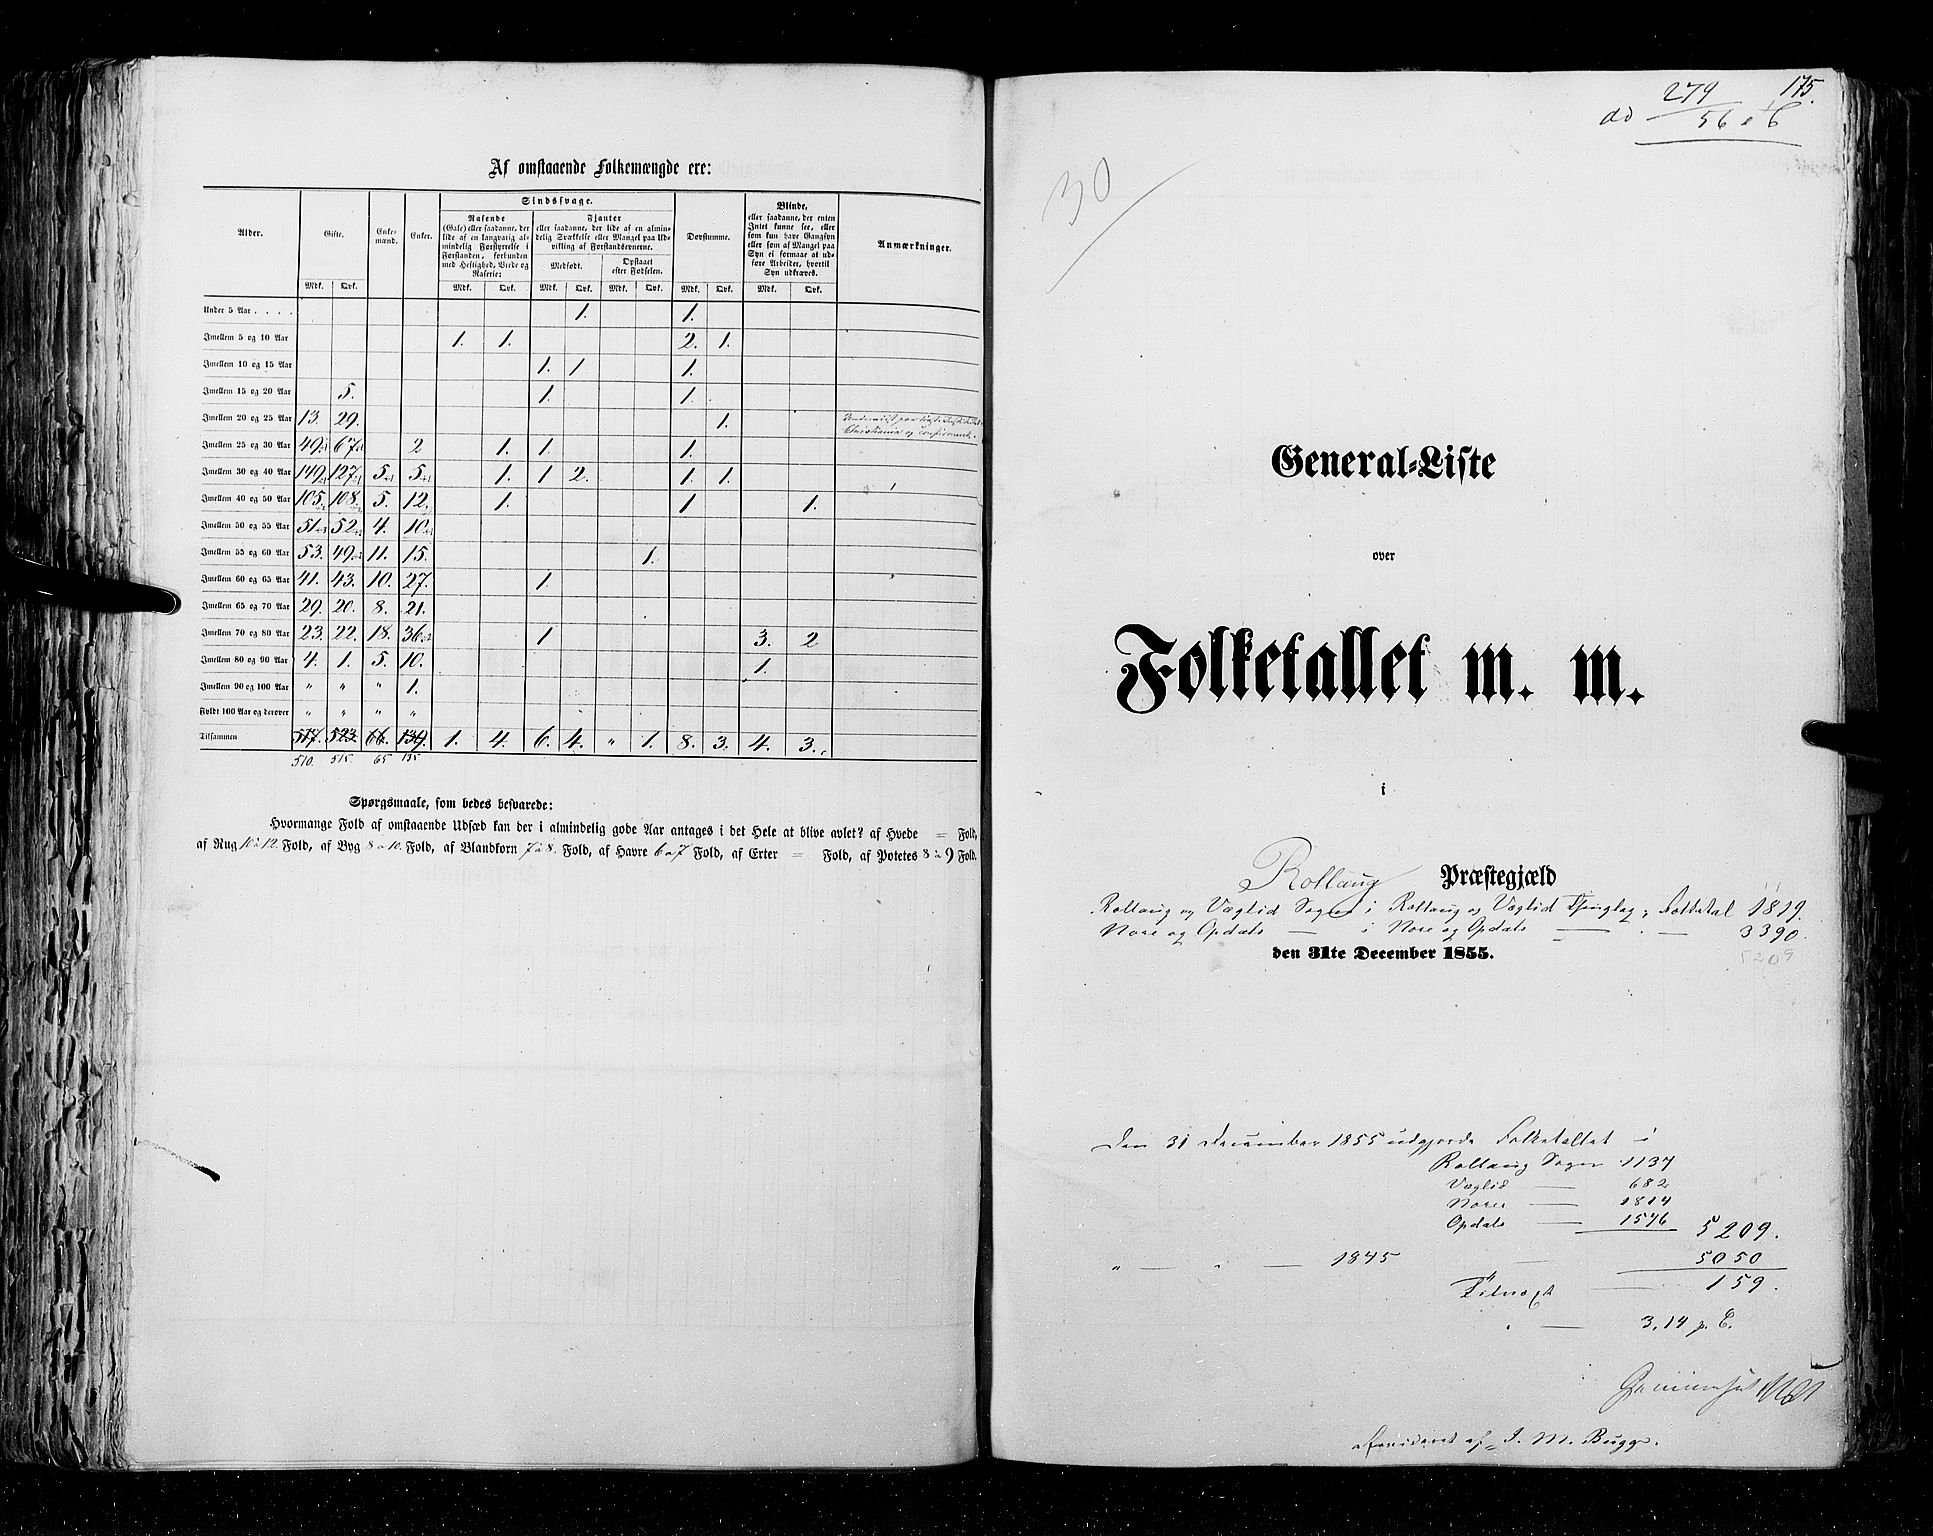 RA, Folketellingen 1855, bind 2: Kristians amt, Buskerud amt og Jarlsberg og Larvik amt, 1855, s. 175